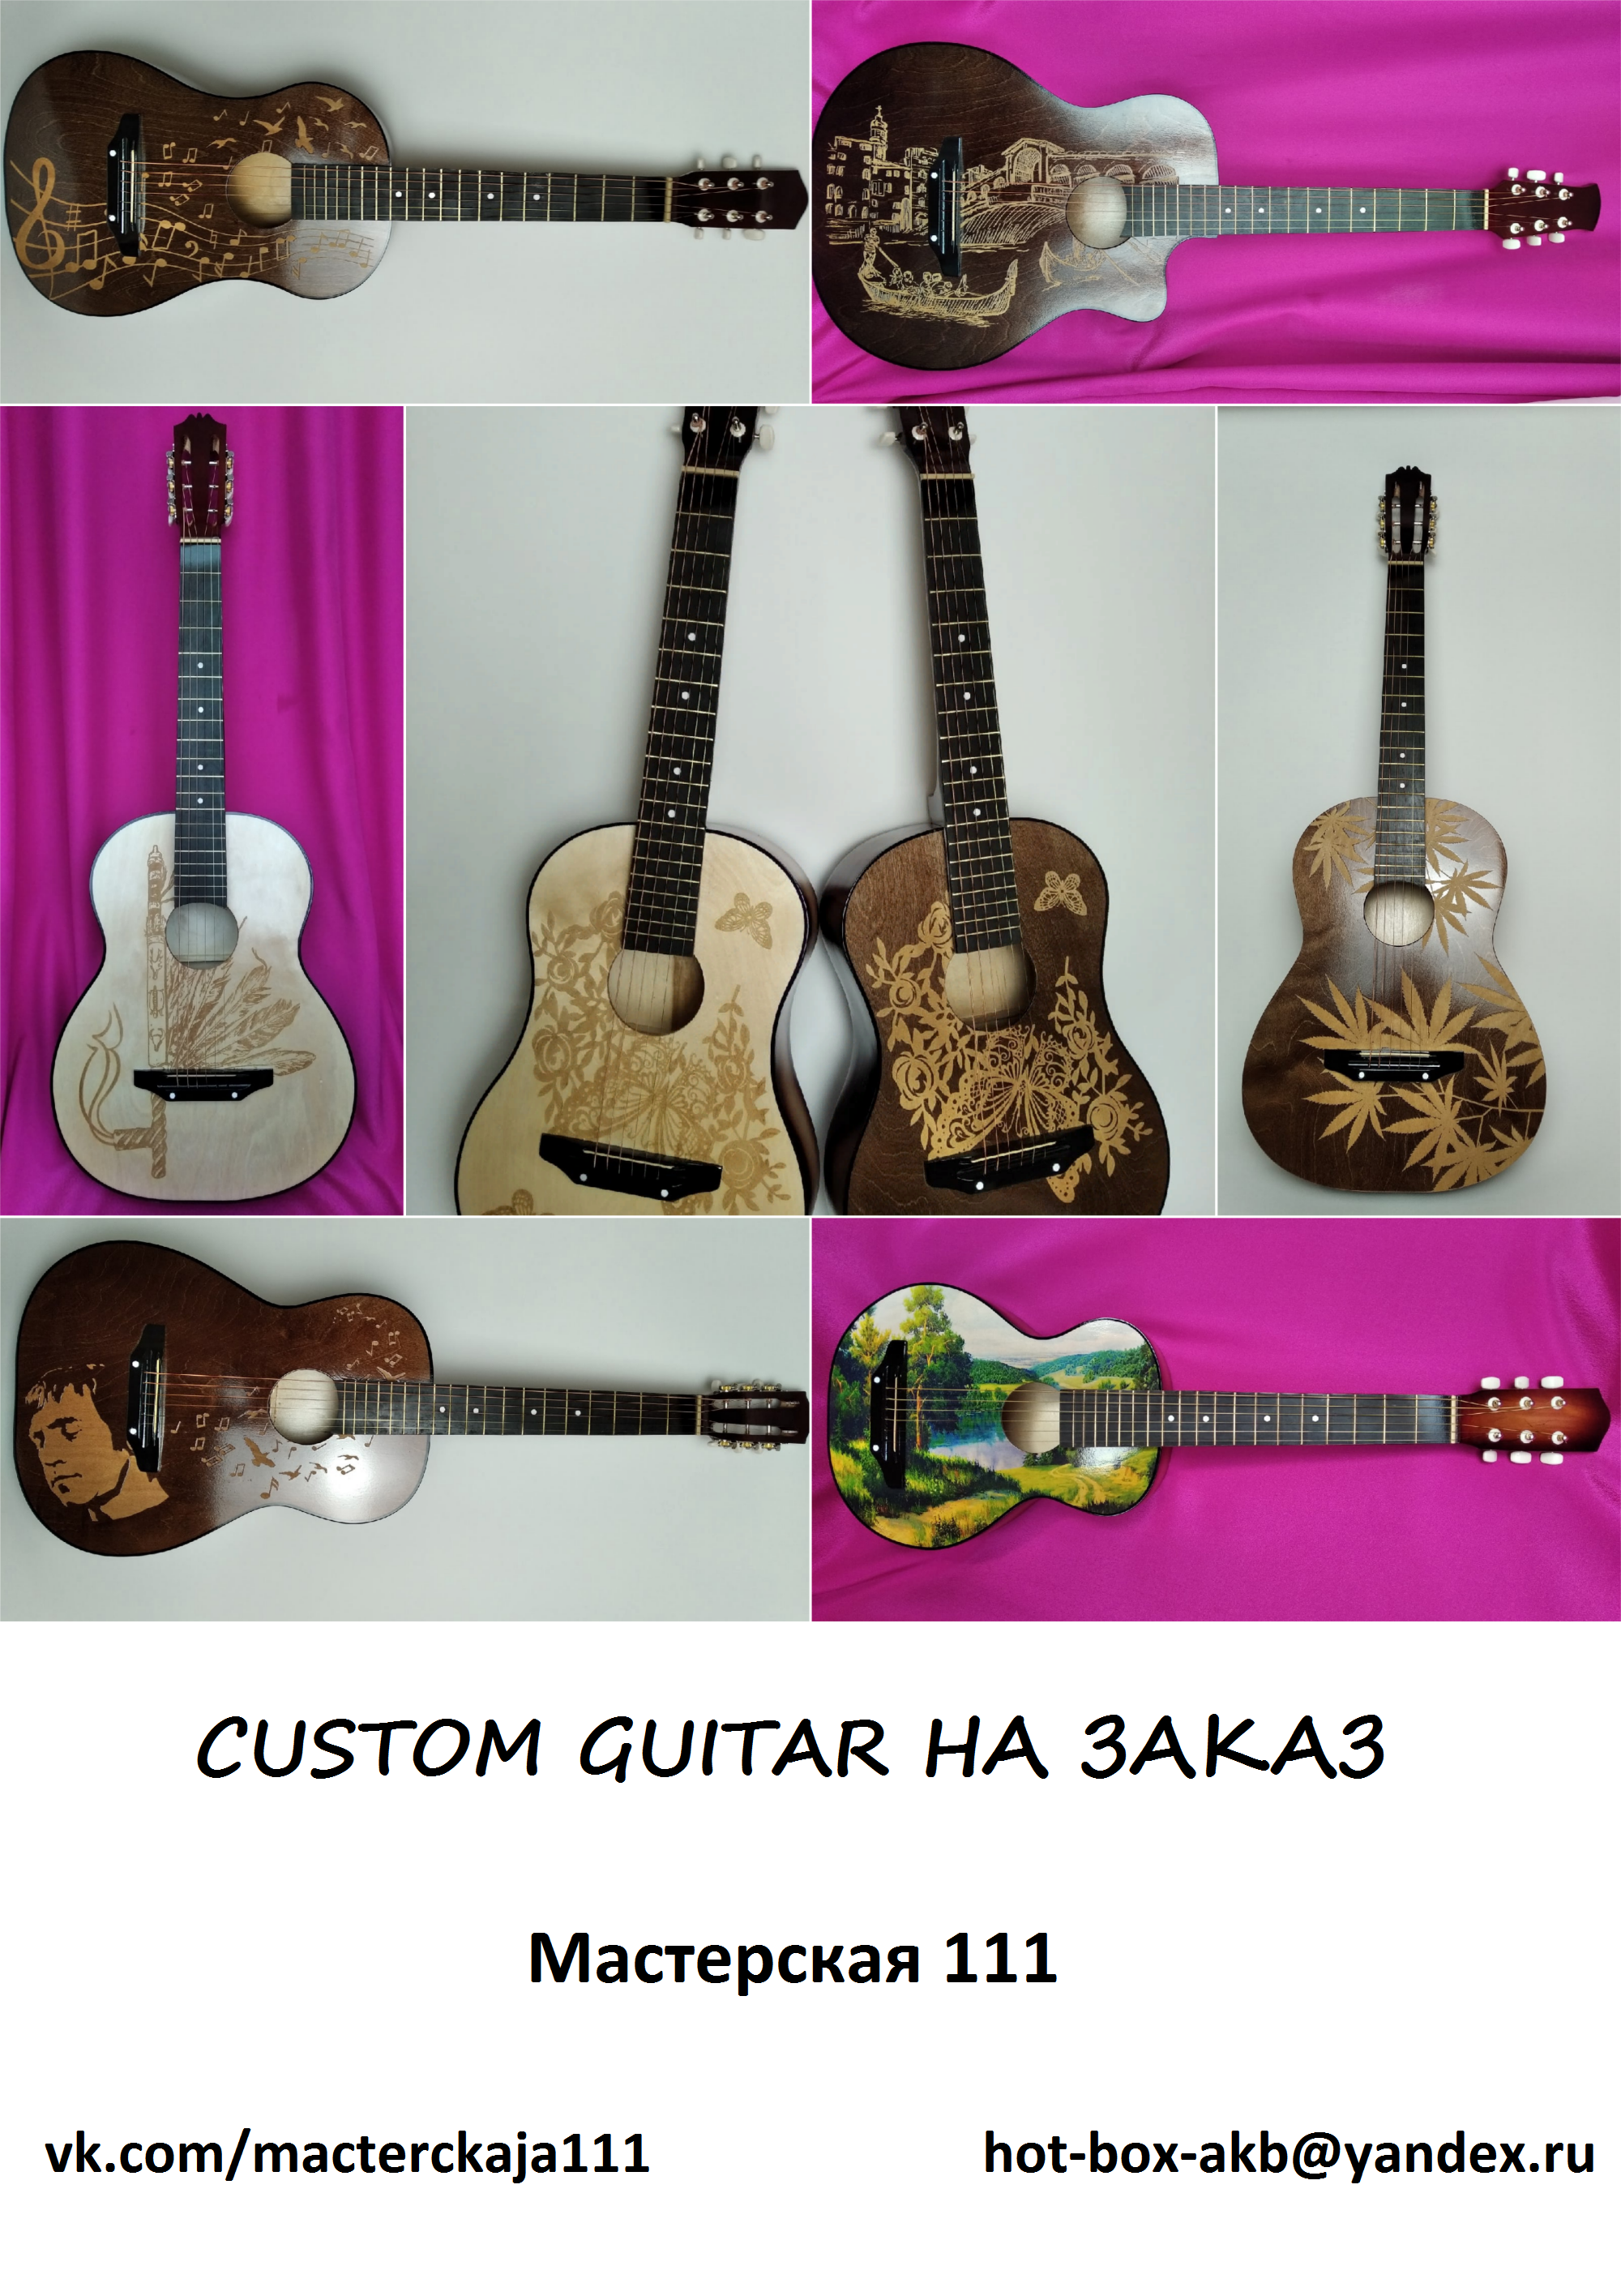 Как мы делаем custom гитары